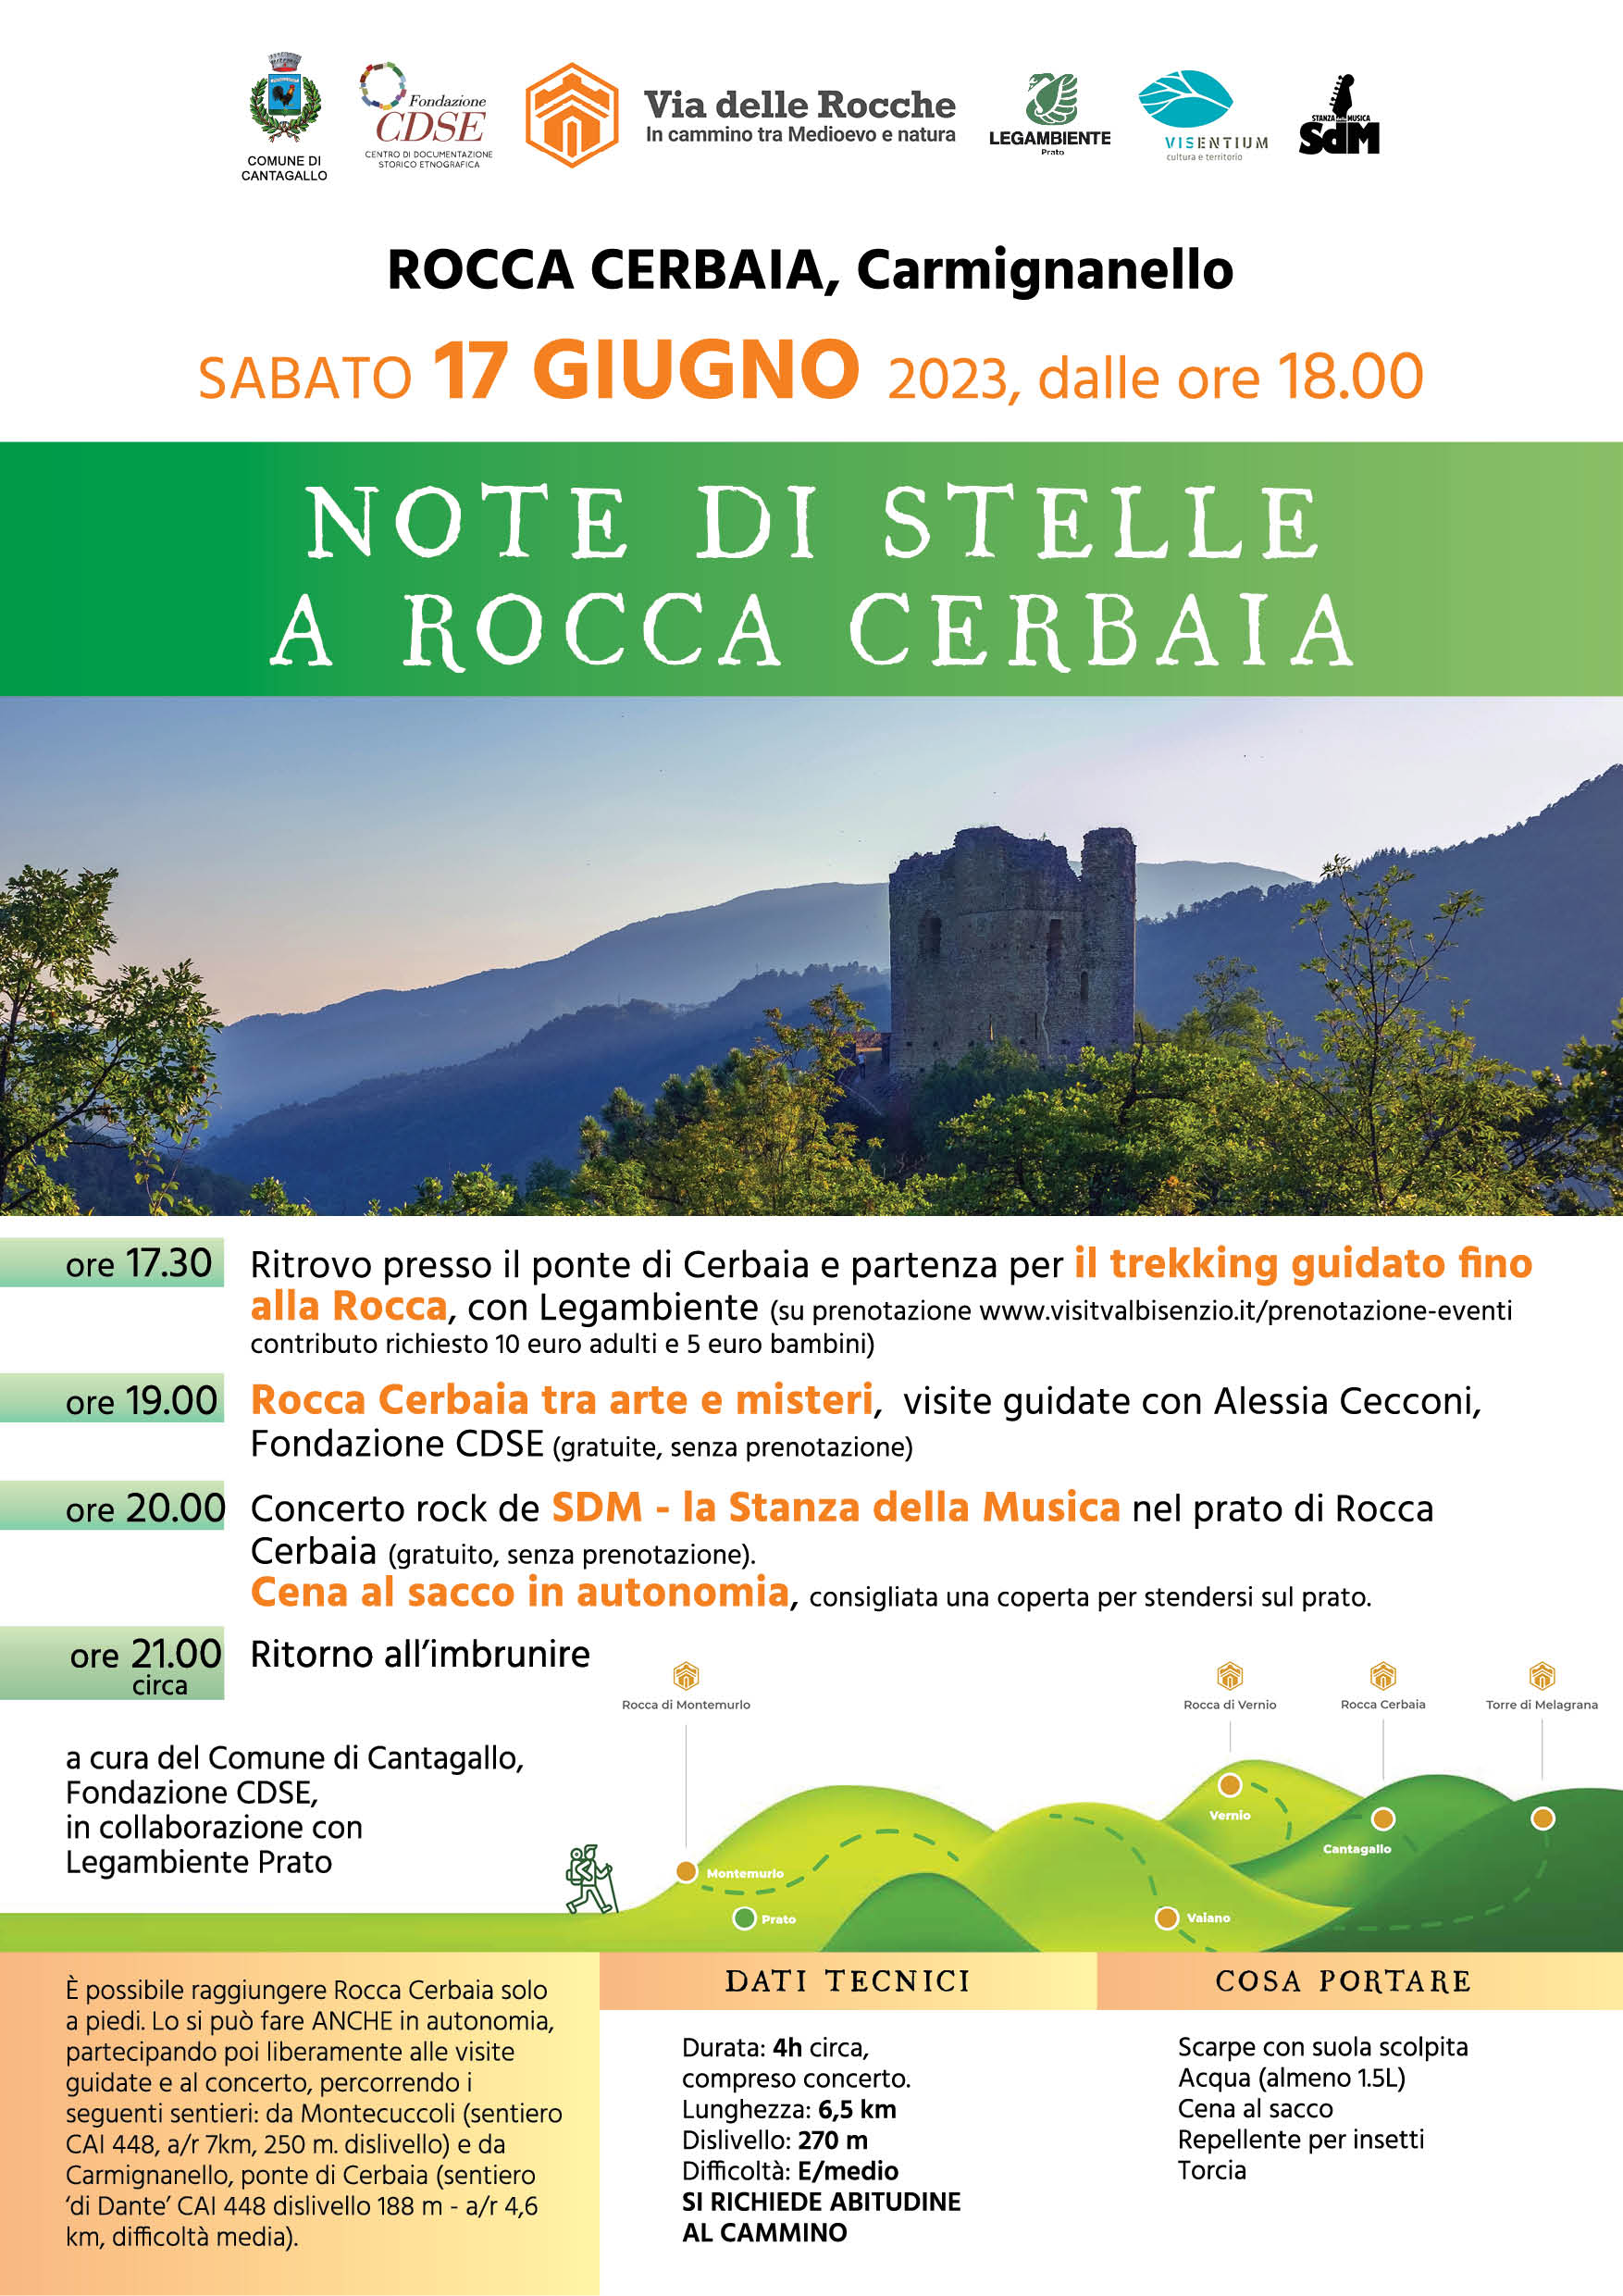 <strong>Via delle Rocche: la Rocca Cerbaia e il tramonto</strong>